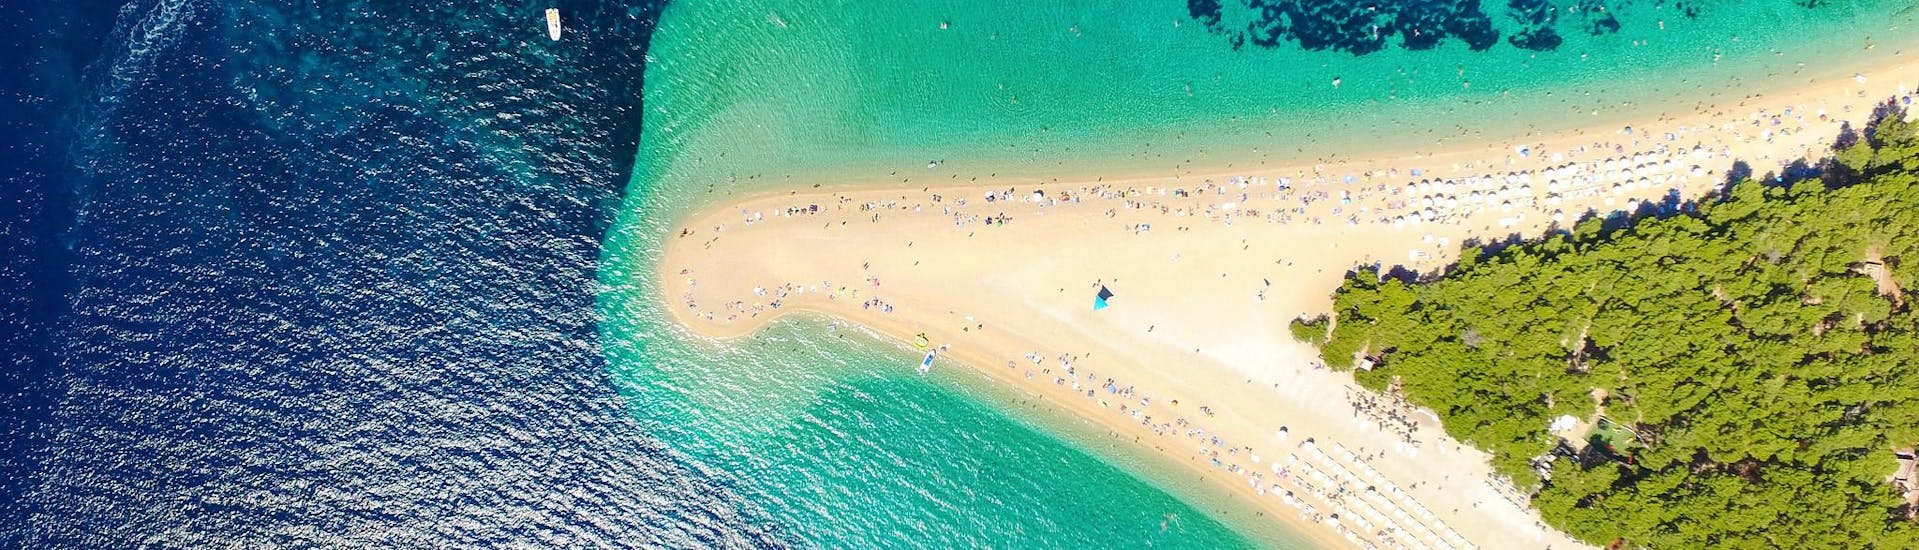 Vue aérienne de la plage de Zlatni Rat, également appelée Golden Horn, l'un des sites les plus populaires à découvrir lors d'une balade en bateau sur l'île de Brač.